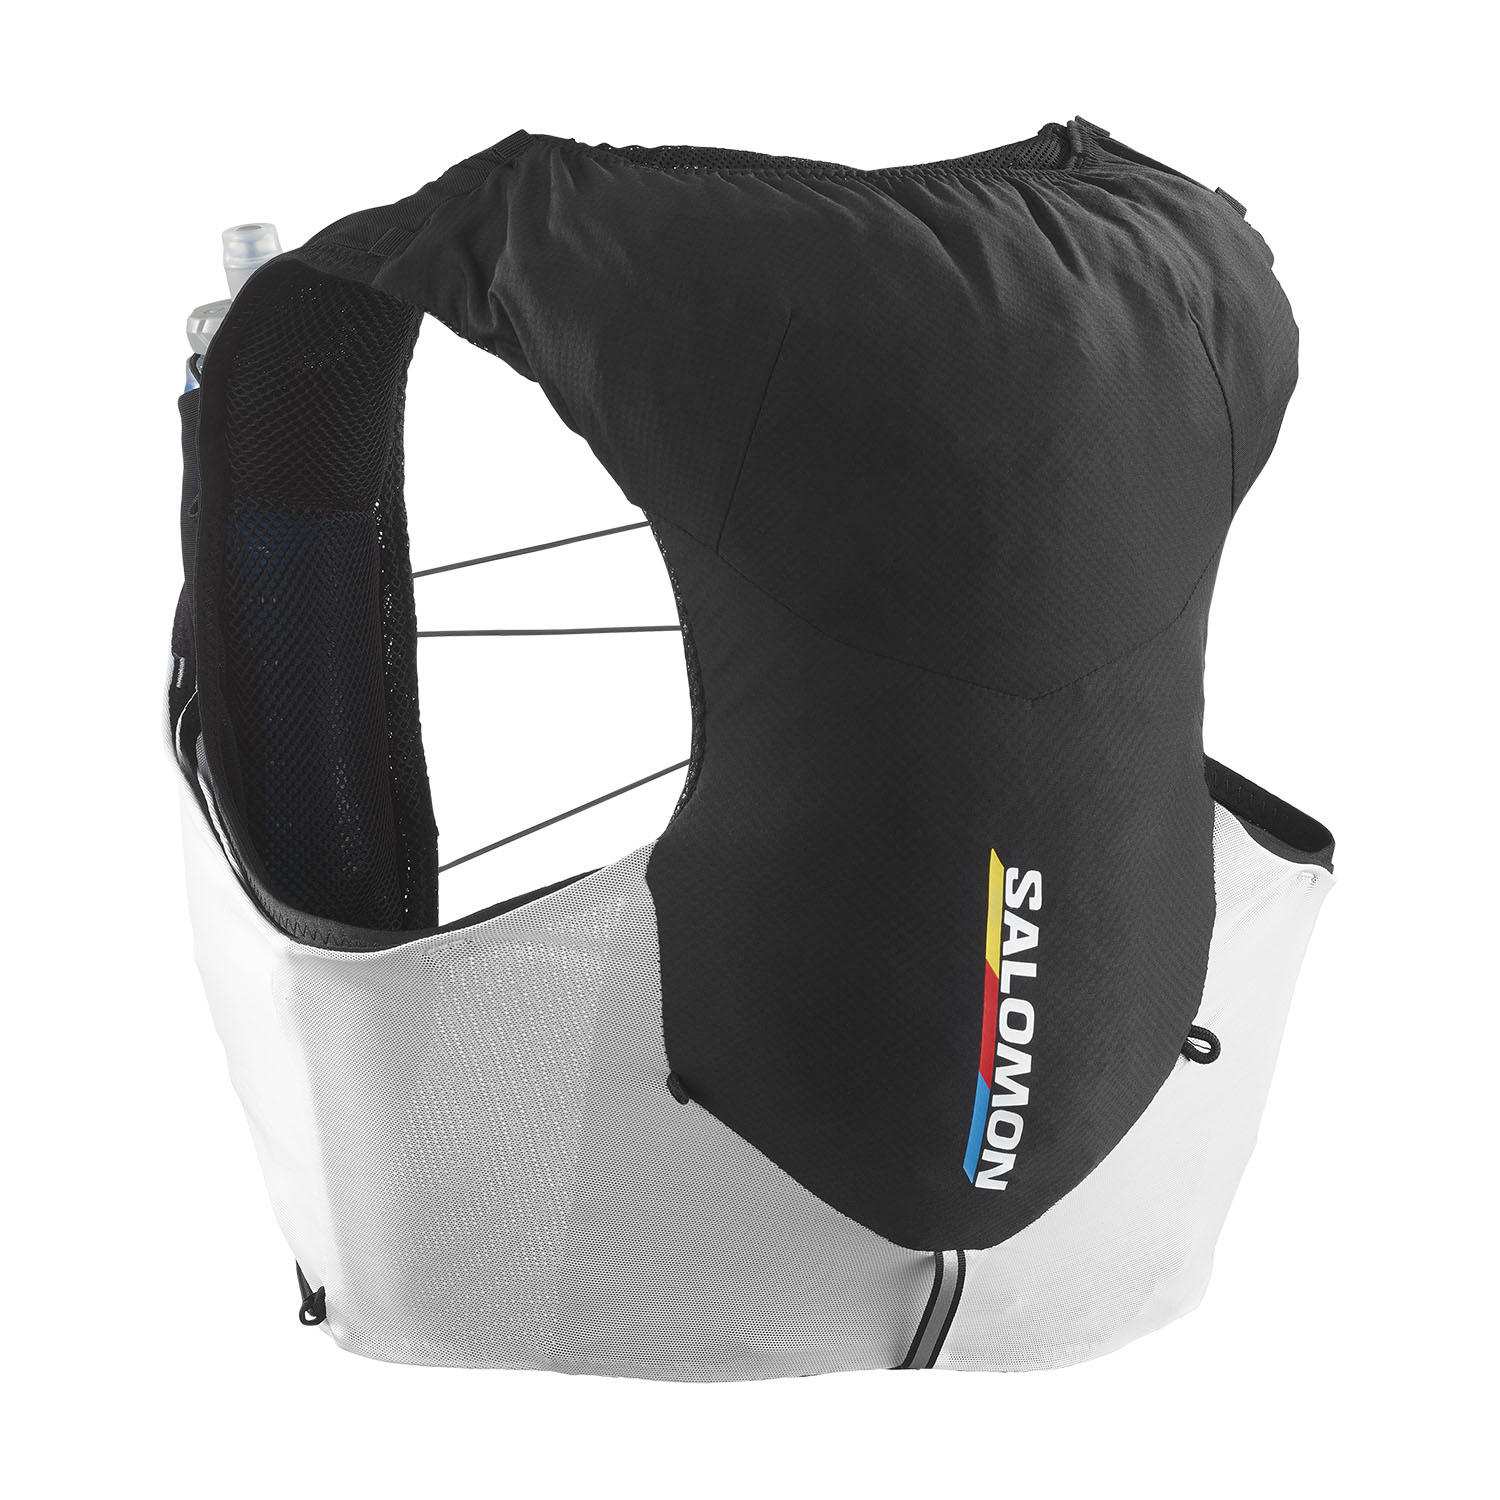 Salomon ADV Skin 5 Set Race Flag Backpack - Black/White